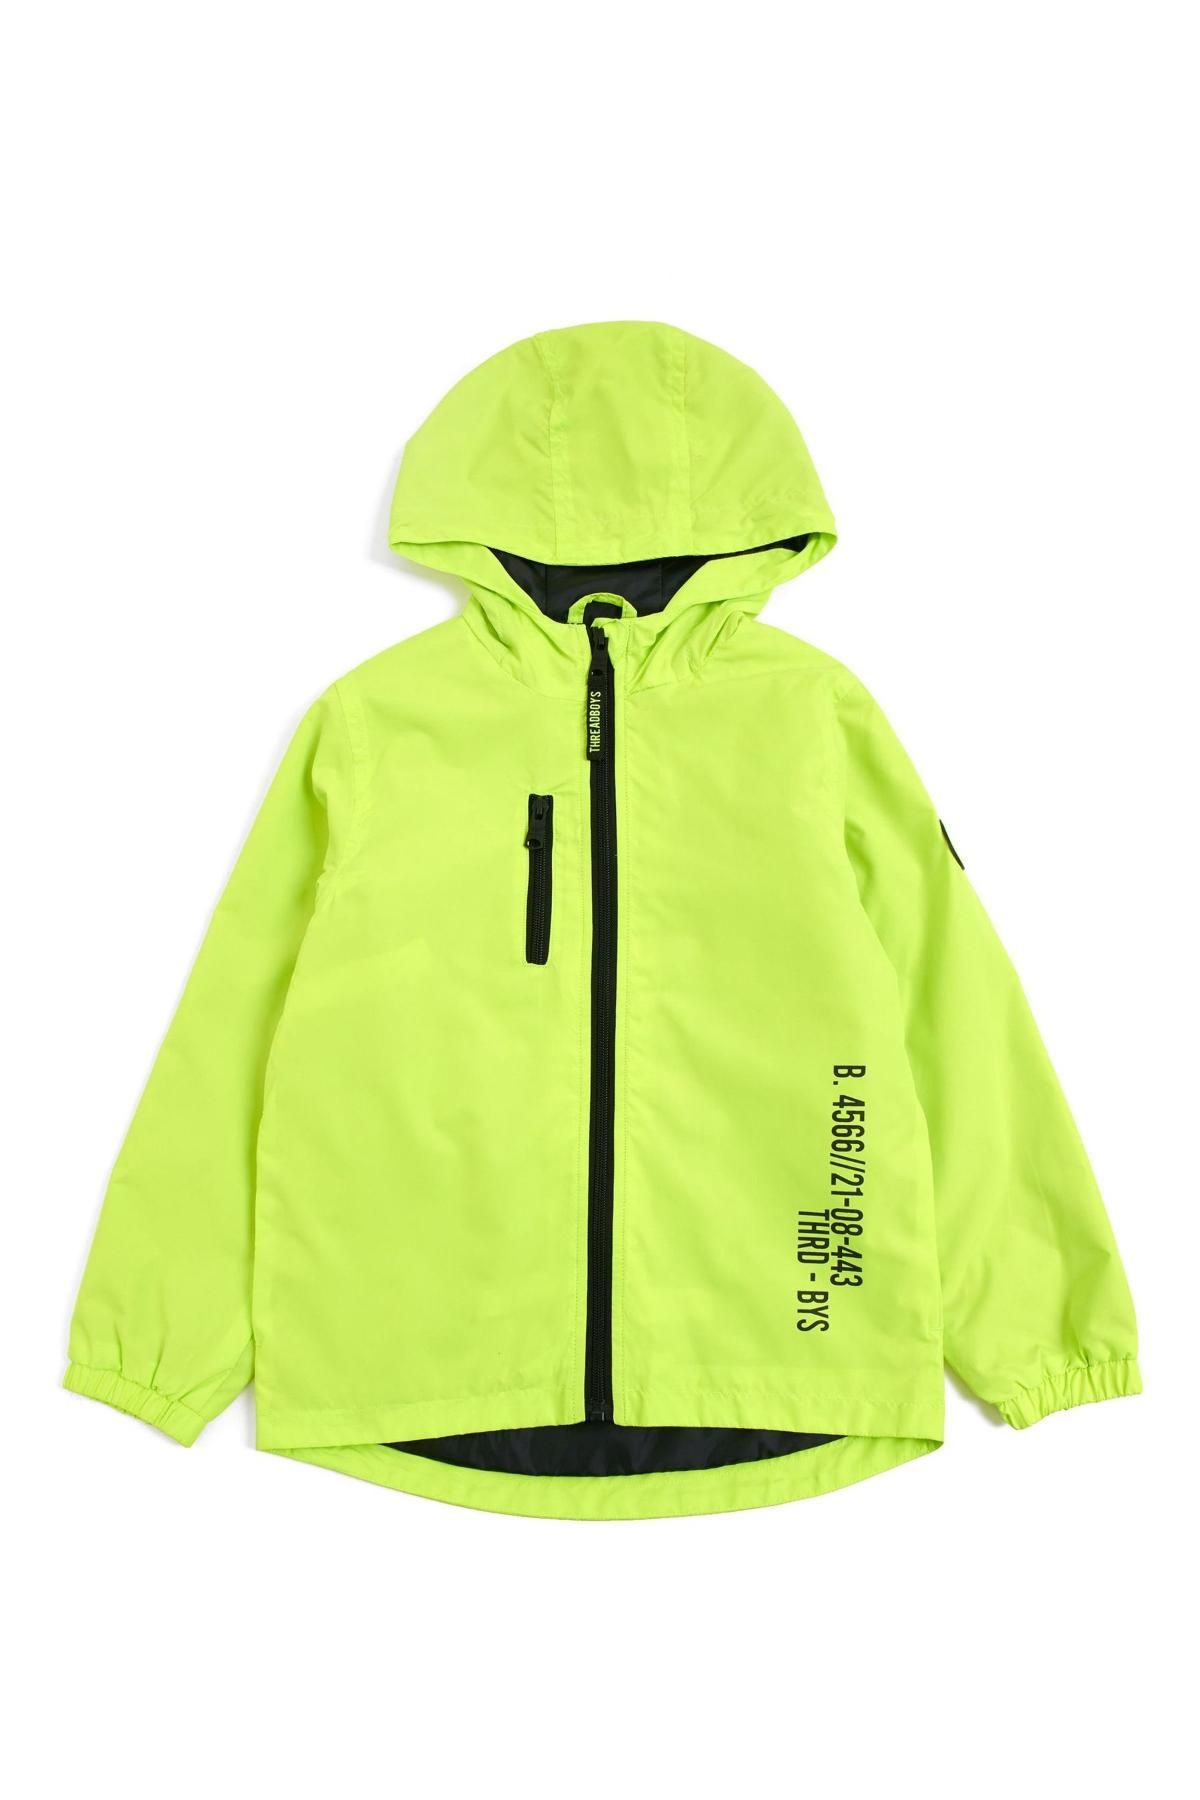 Threadbare Boys Shower Proof Jacket Neon